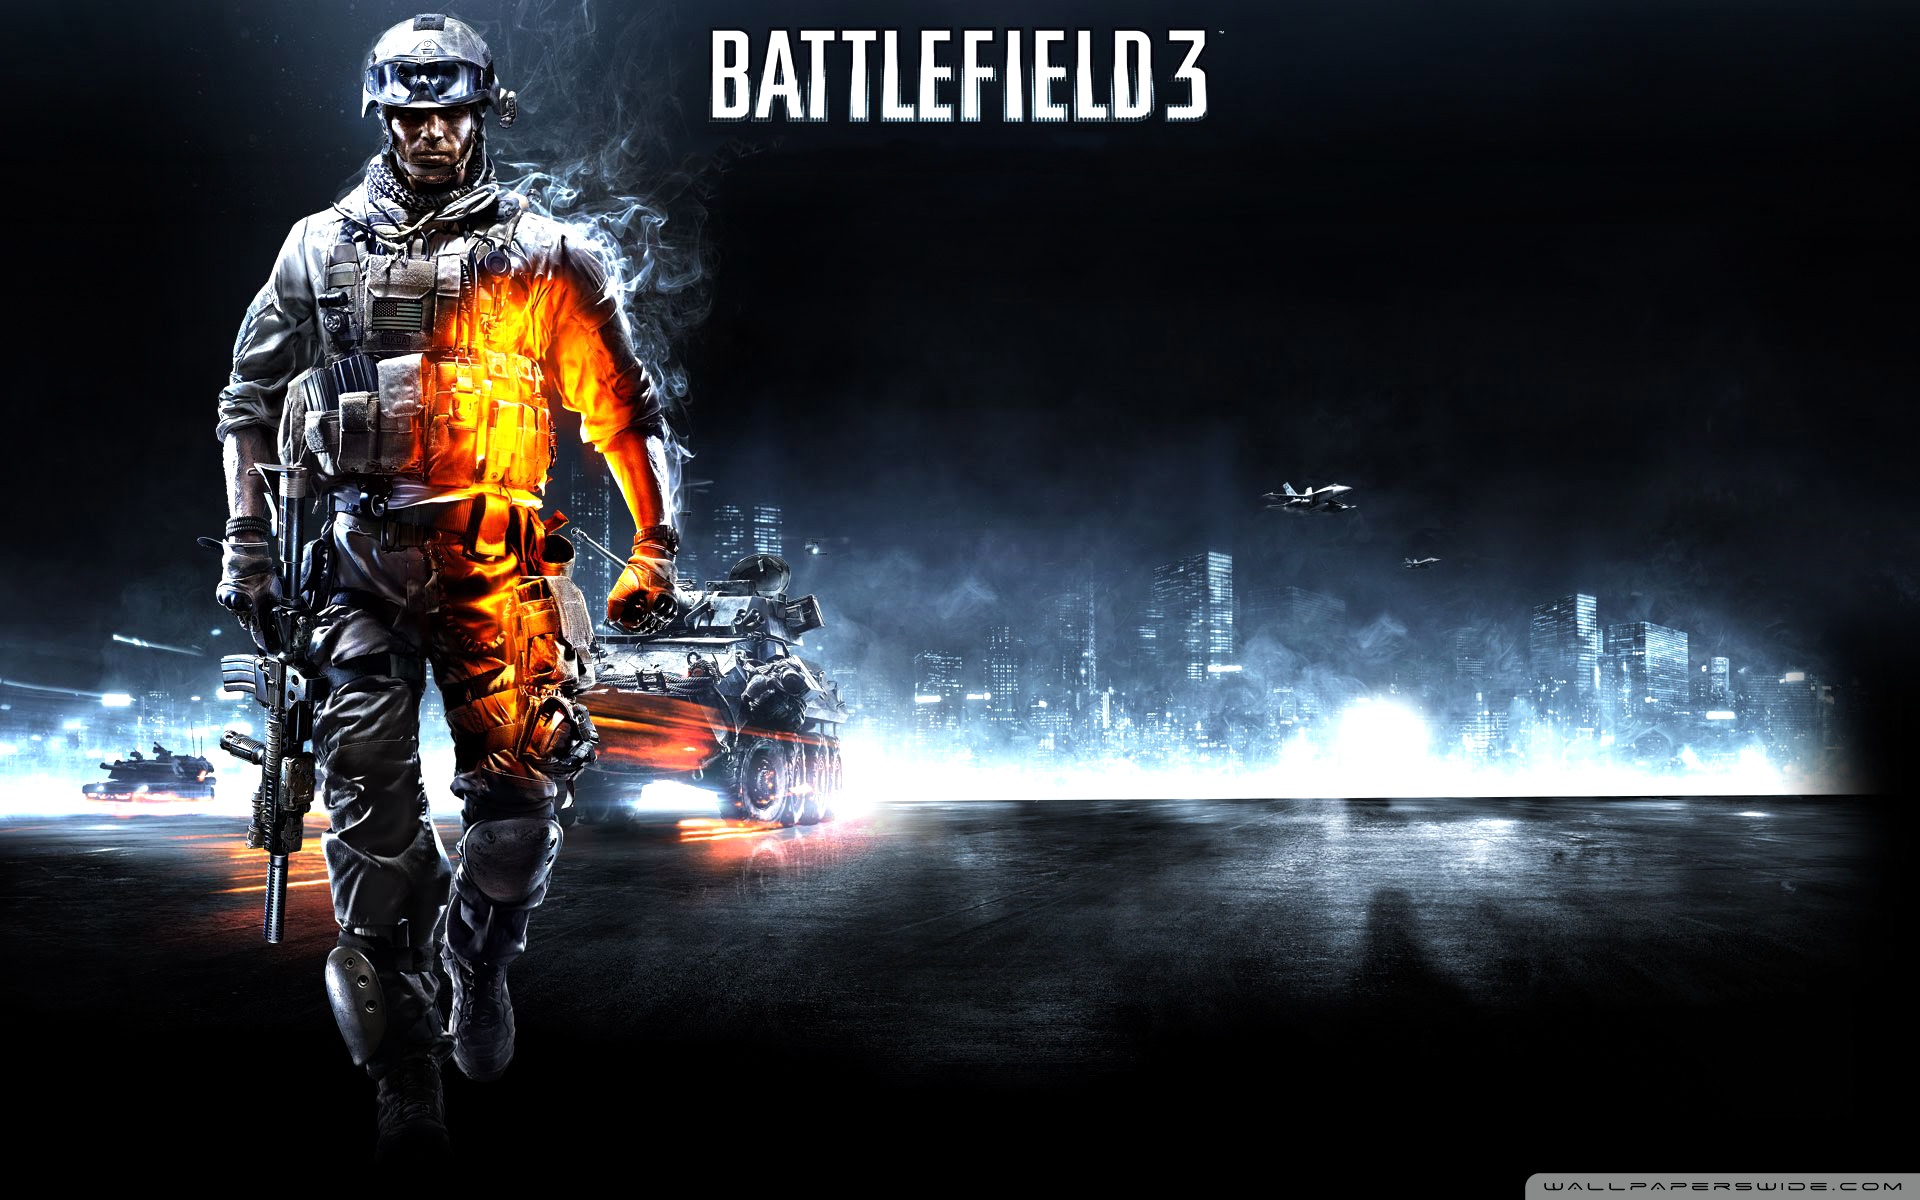 Battlefield 3 wallpaper hd